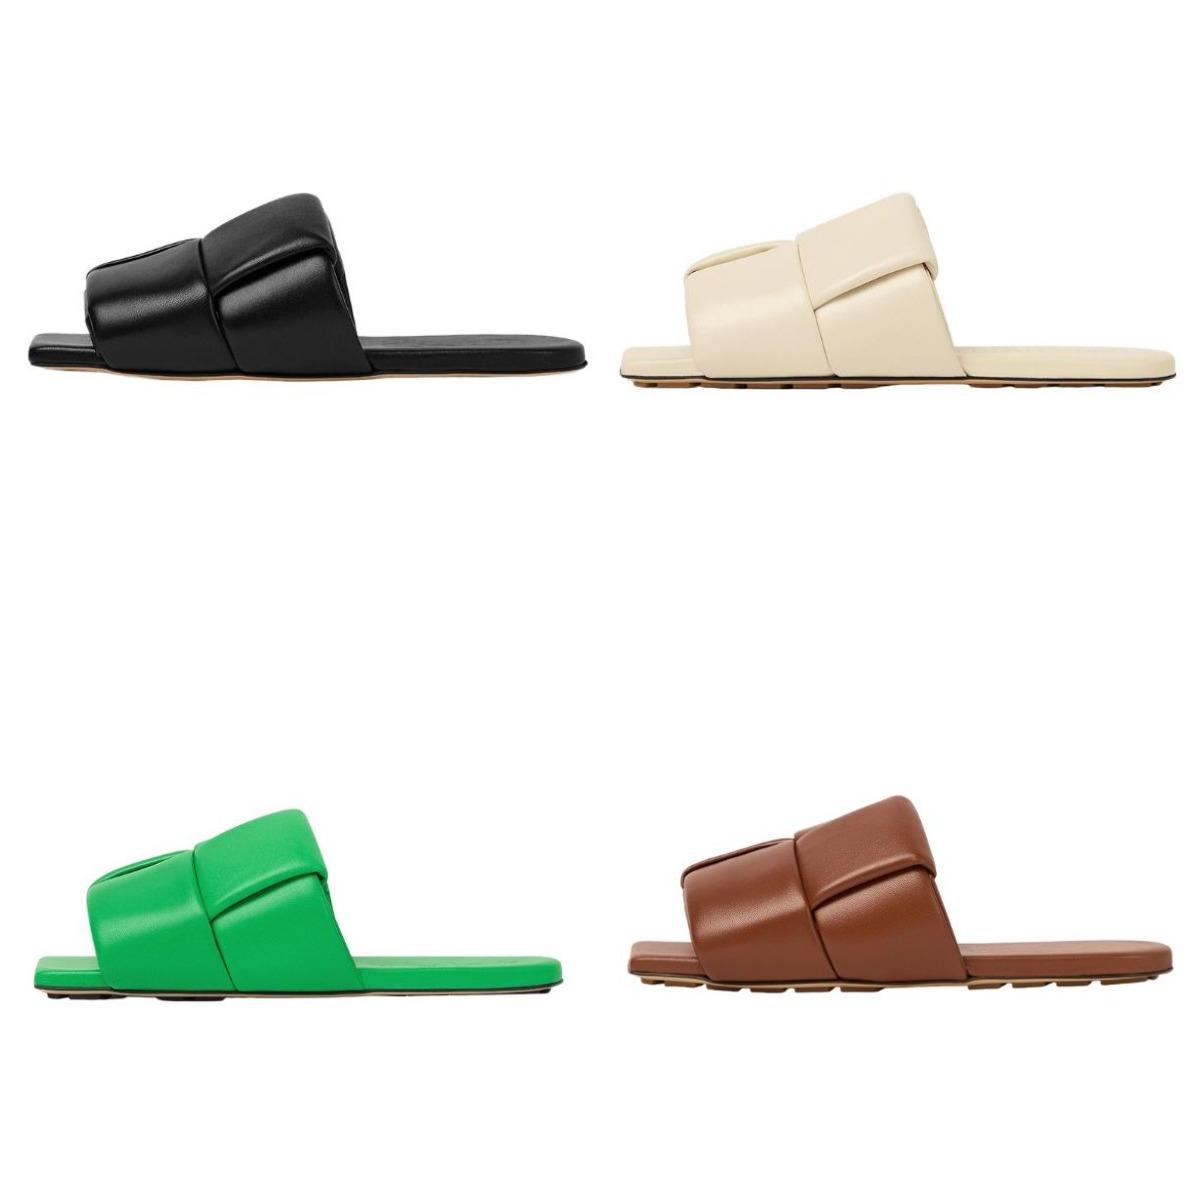 

2023 Lido Slider Sandals Designer Woman Slippers Beach Slides Flat Rubber Shoe Flip Flops for Men Women Green Toe Wear resistant bottegas sandal Slipper 35-40